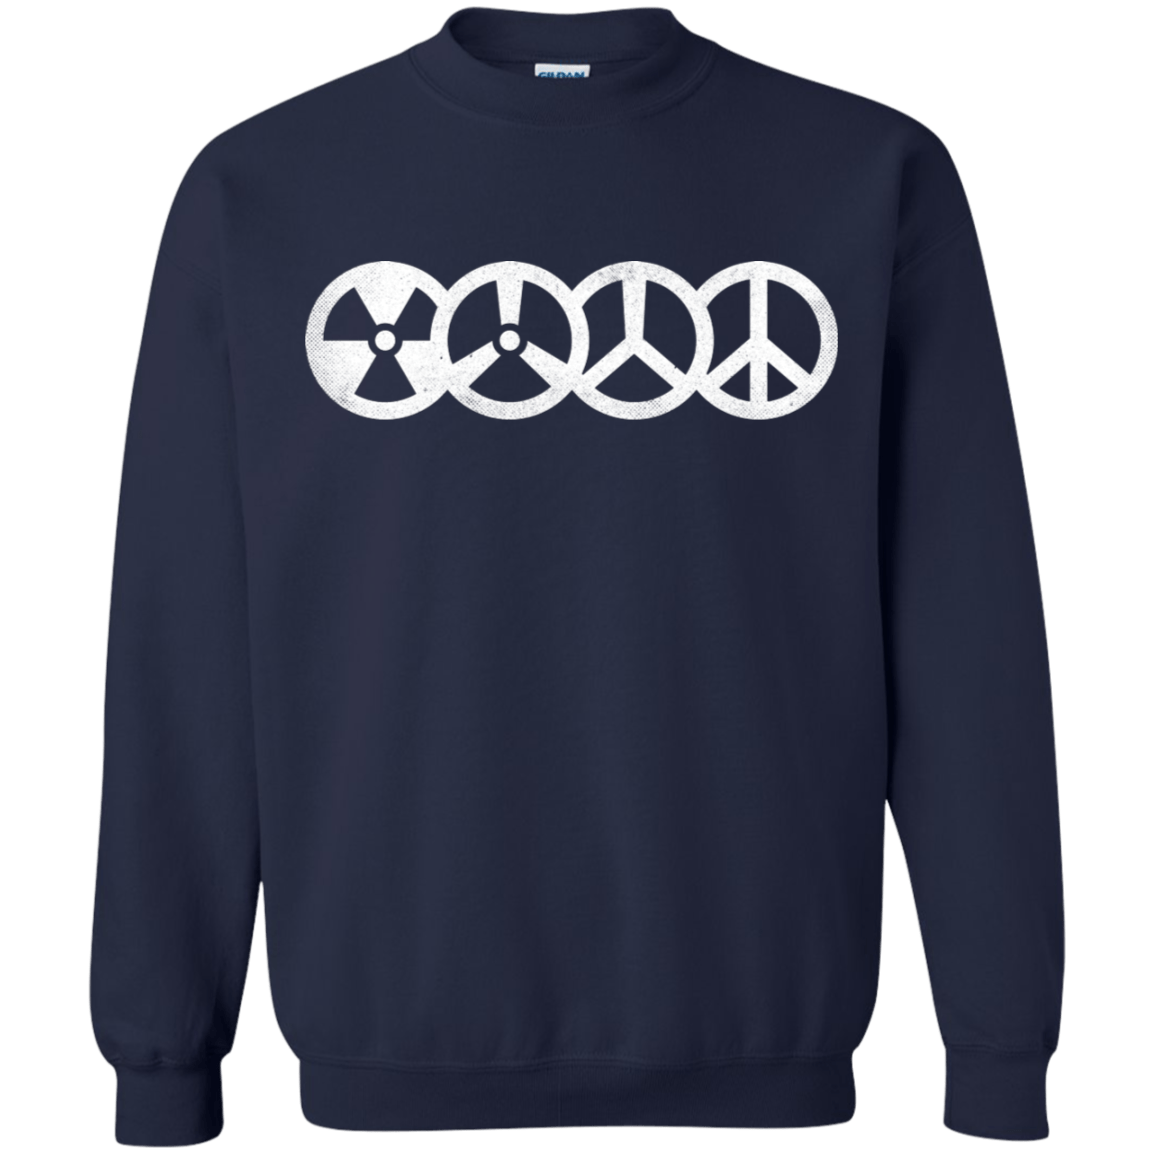 Sweatshirts Navy / S War and Peace Crewneck Sweatshirt